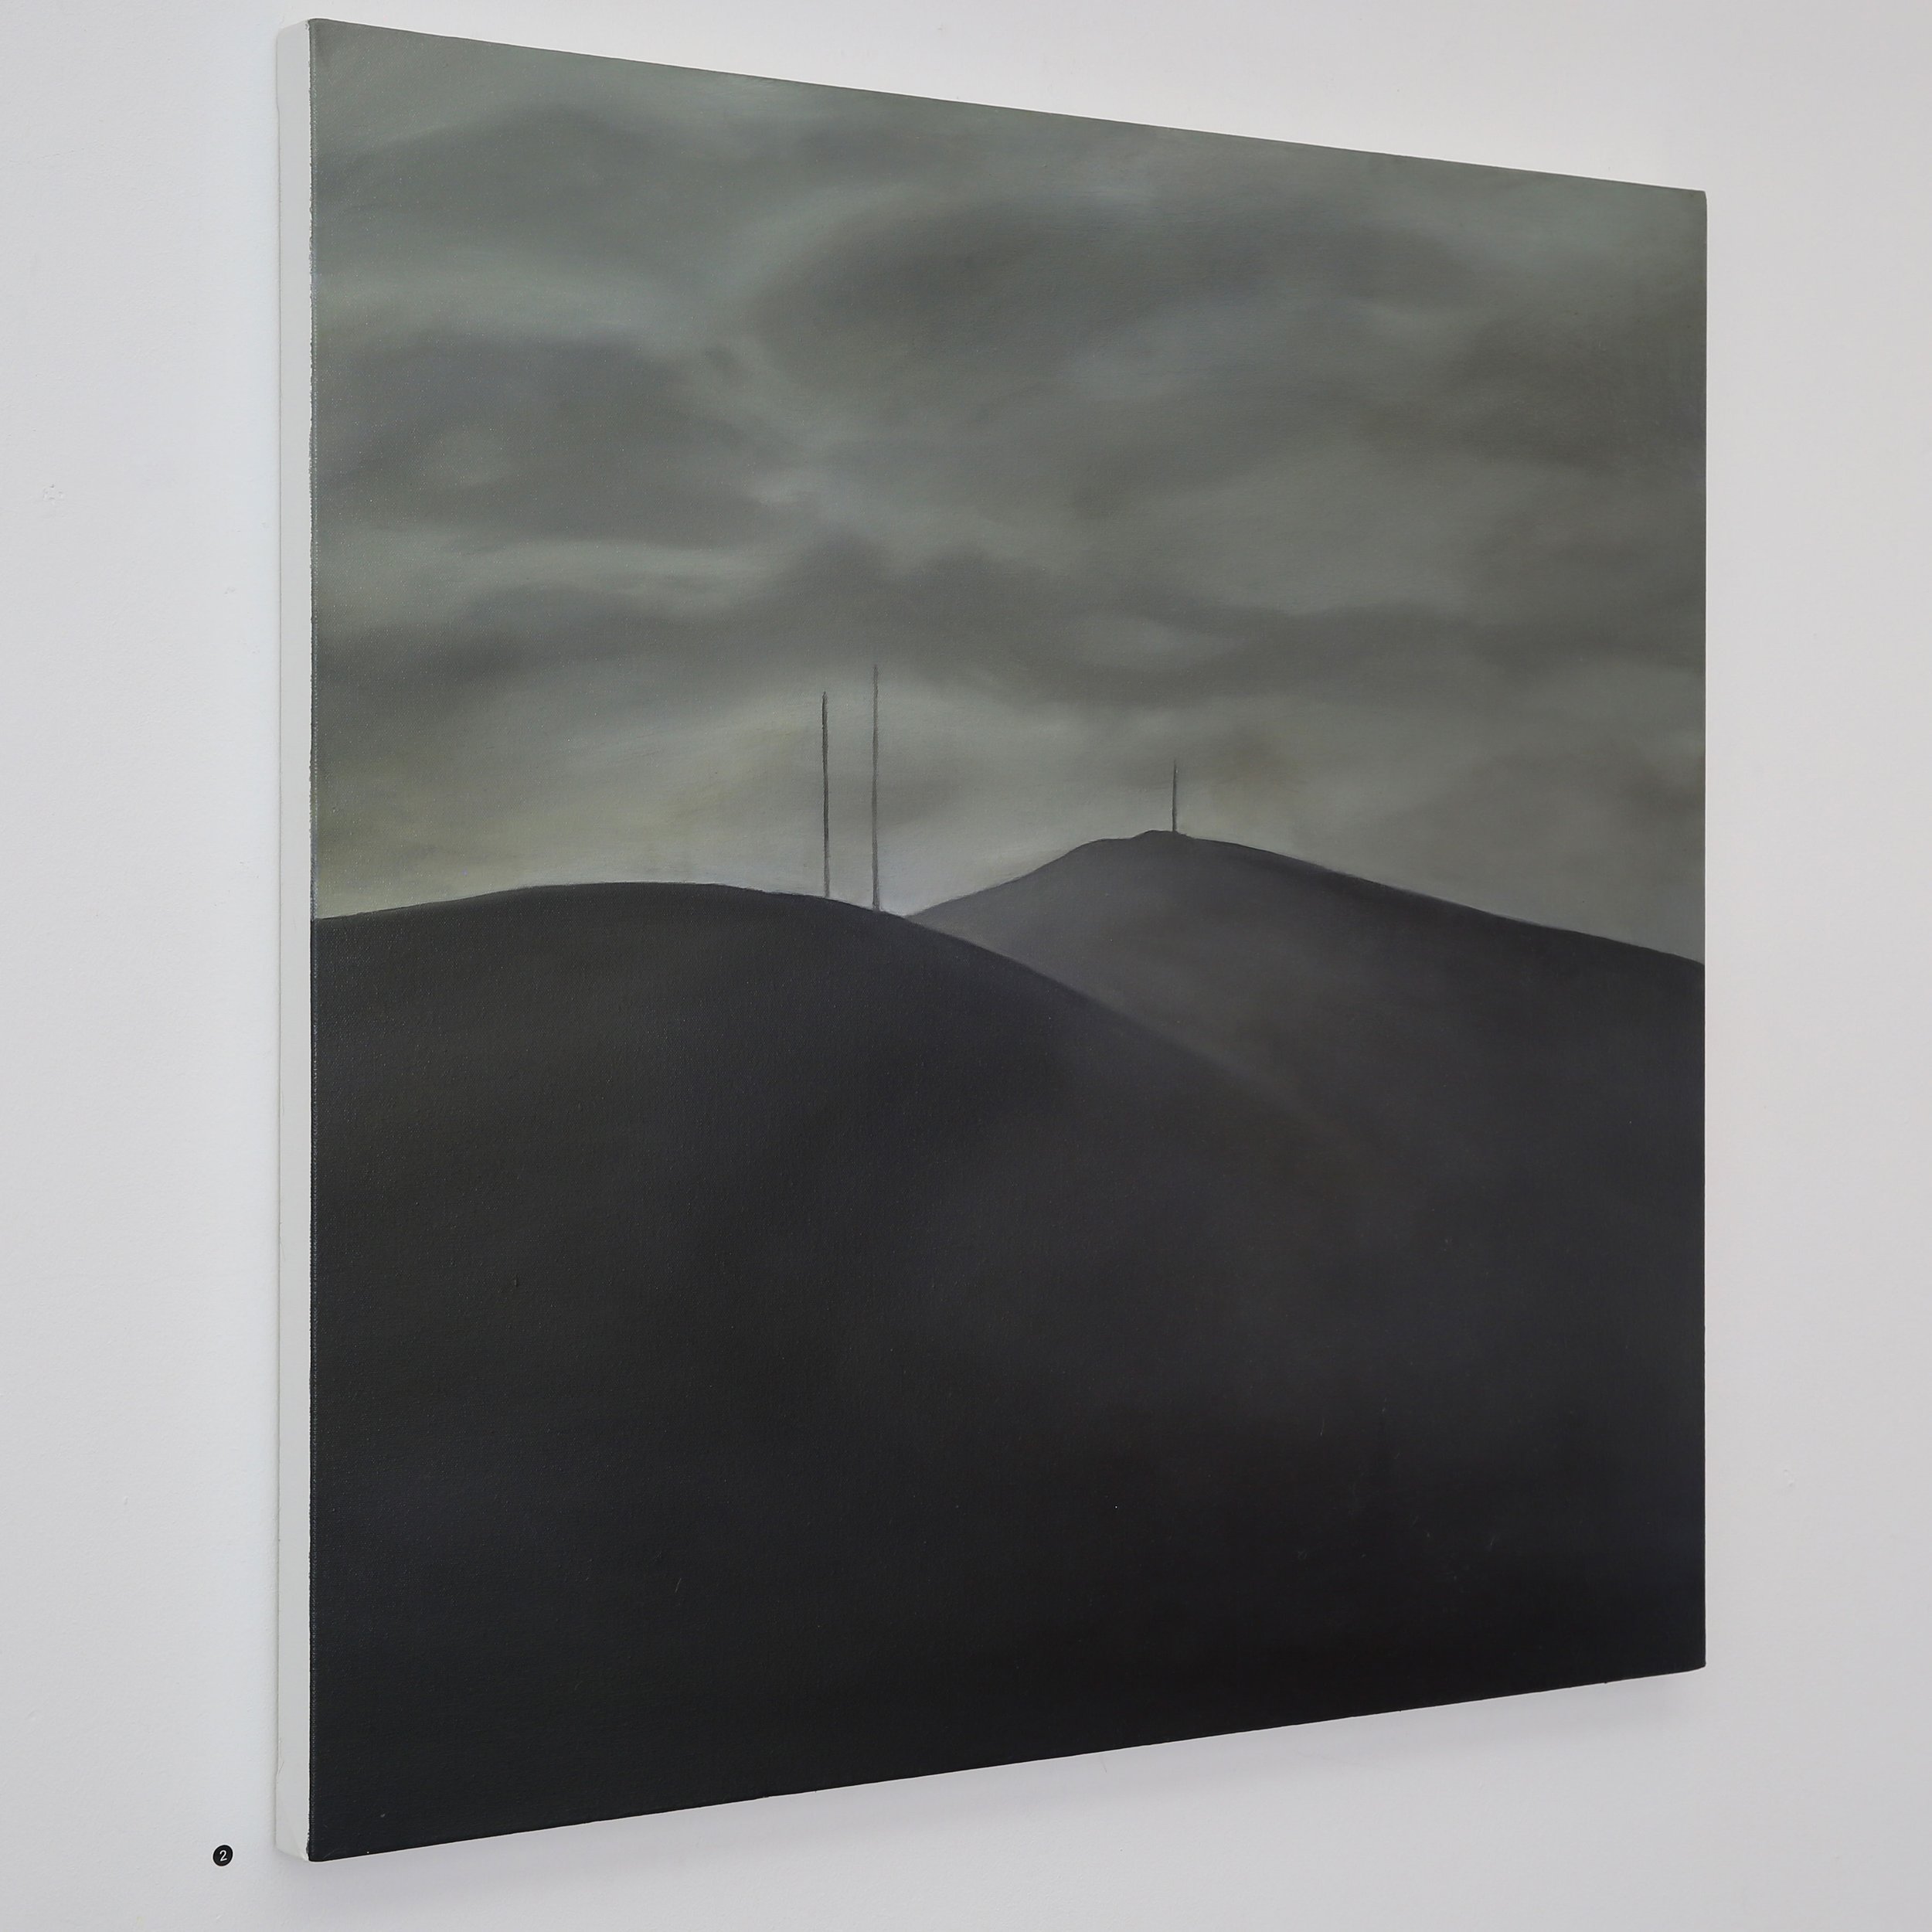 Silence-Oil-on-canvas-90-x-90cm-©-Jonathan-Brennan-2022.jpg